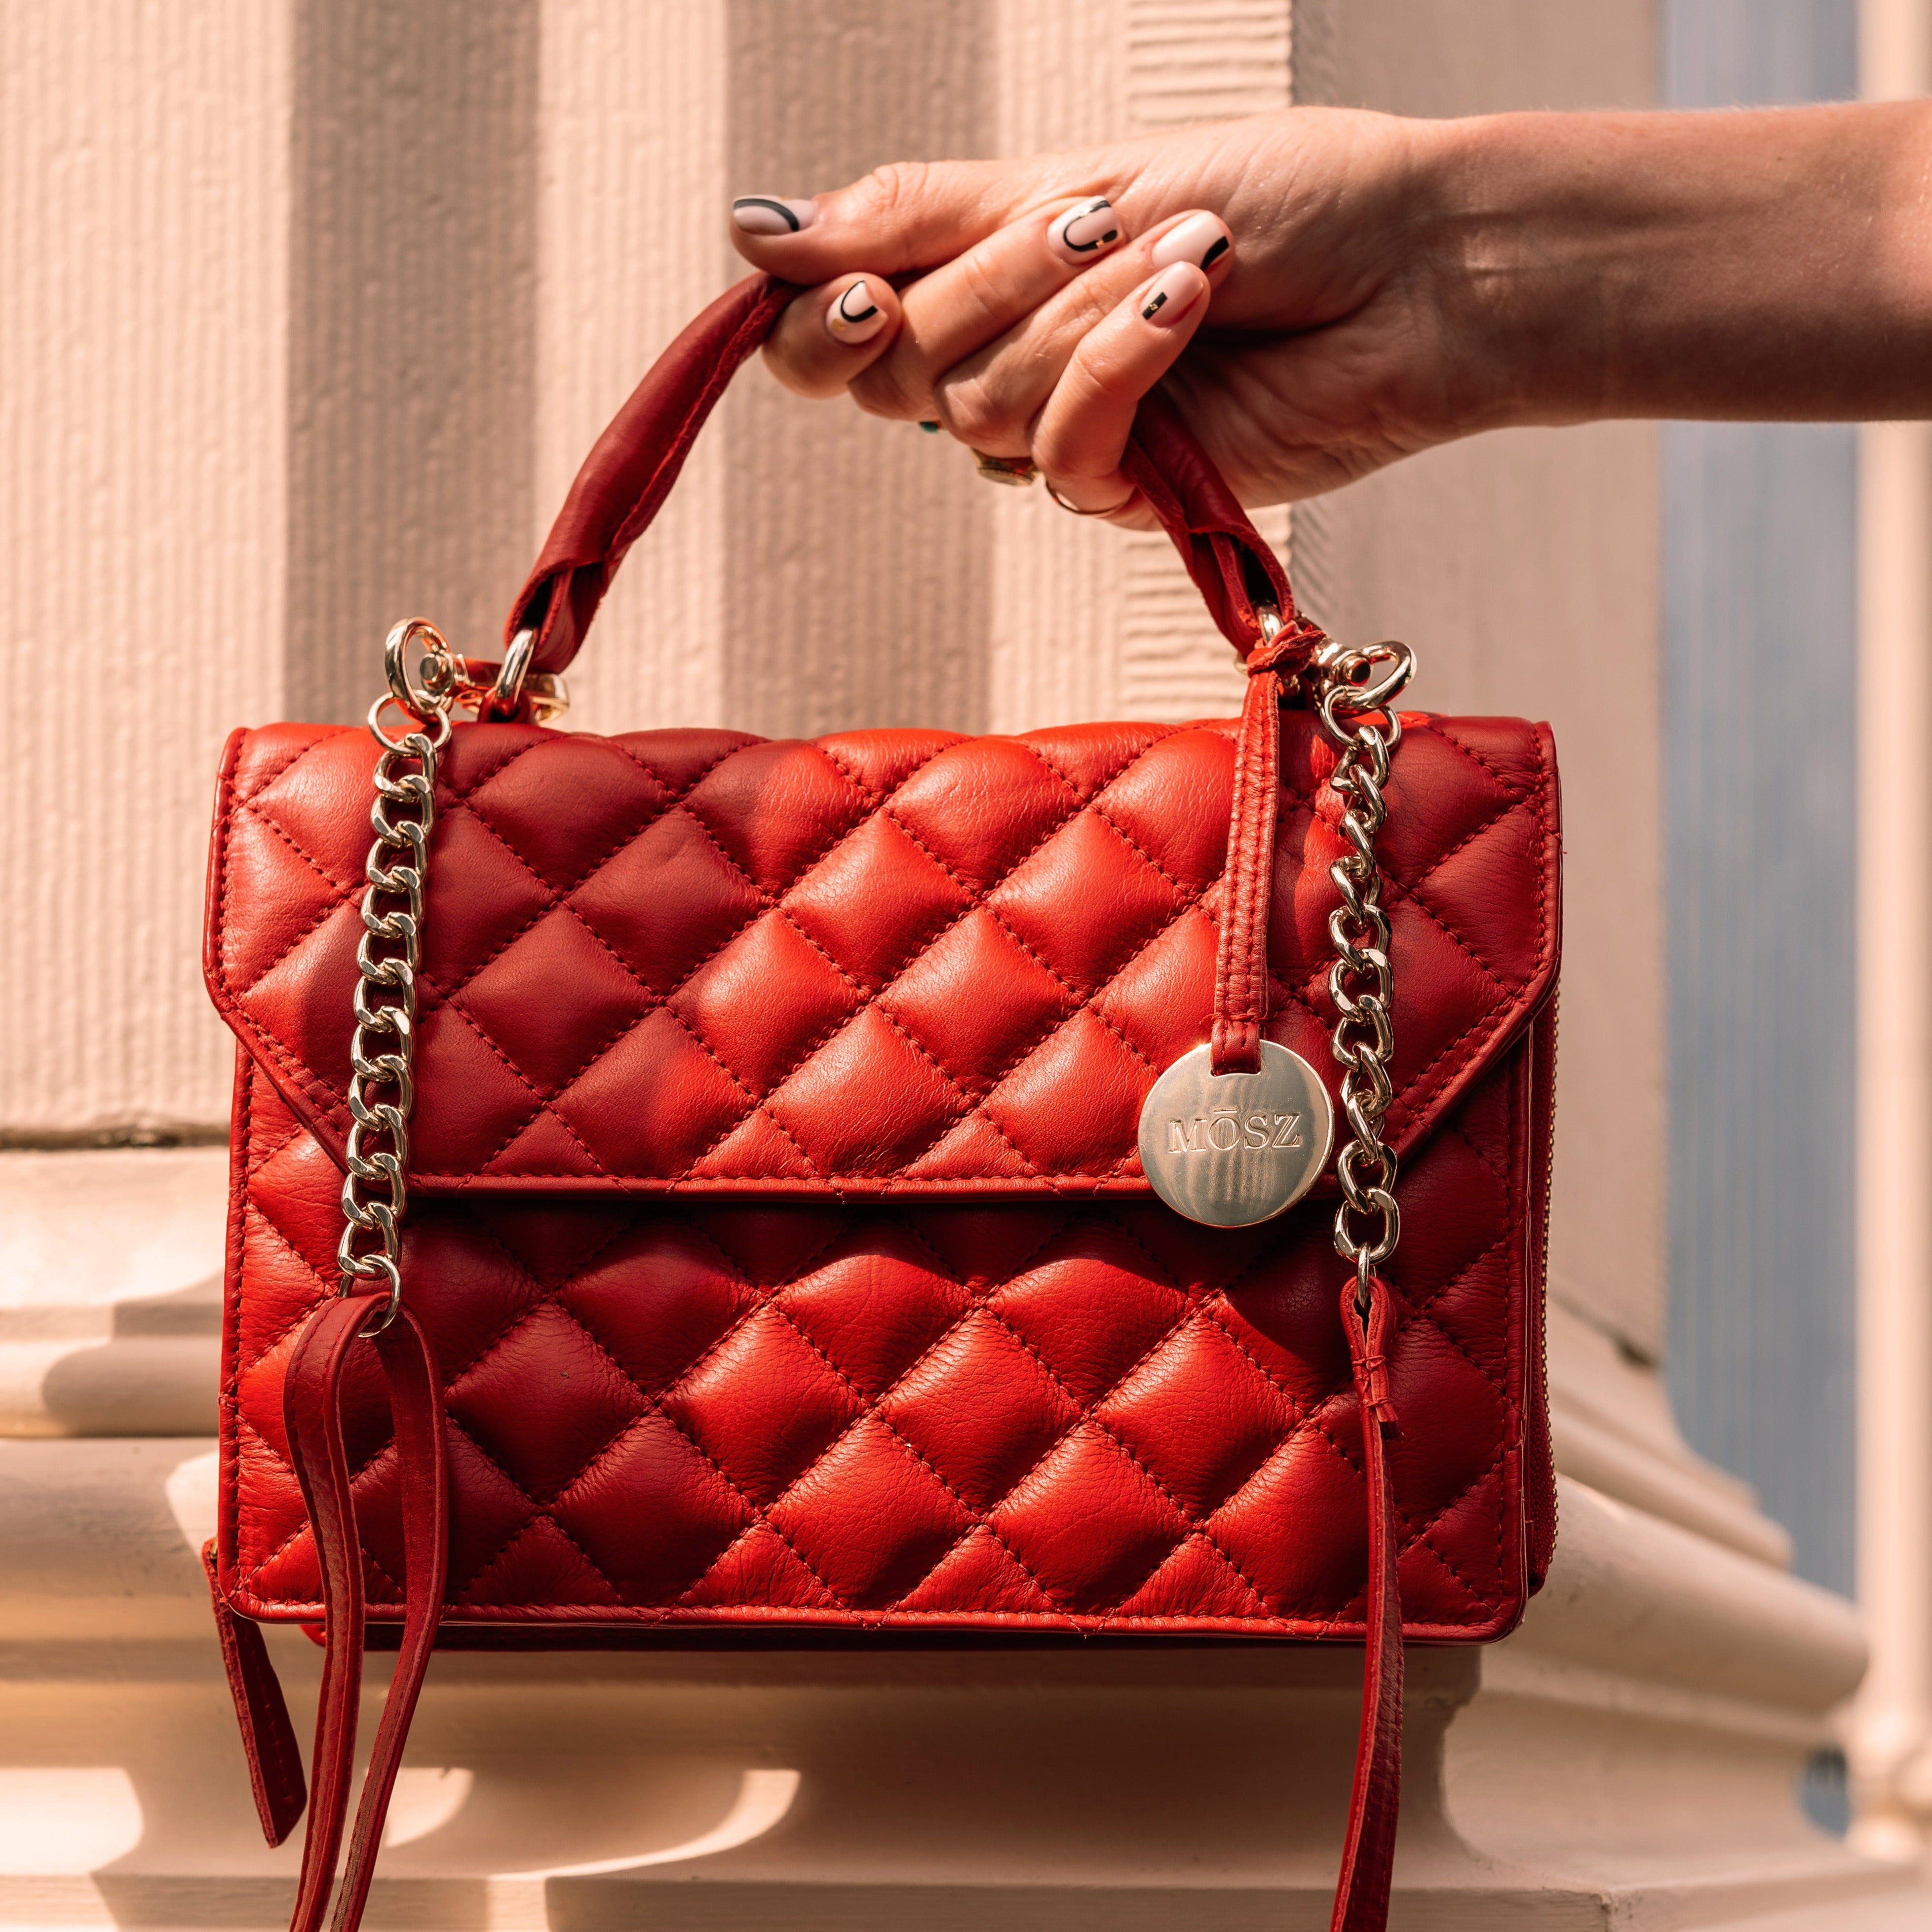 Leather ladies handbag - red quilted - MŌSZ Kris L